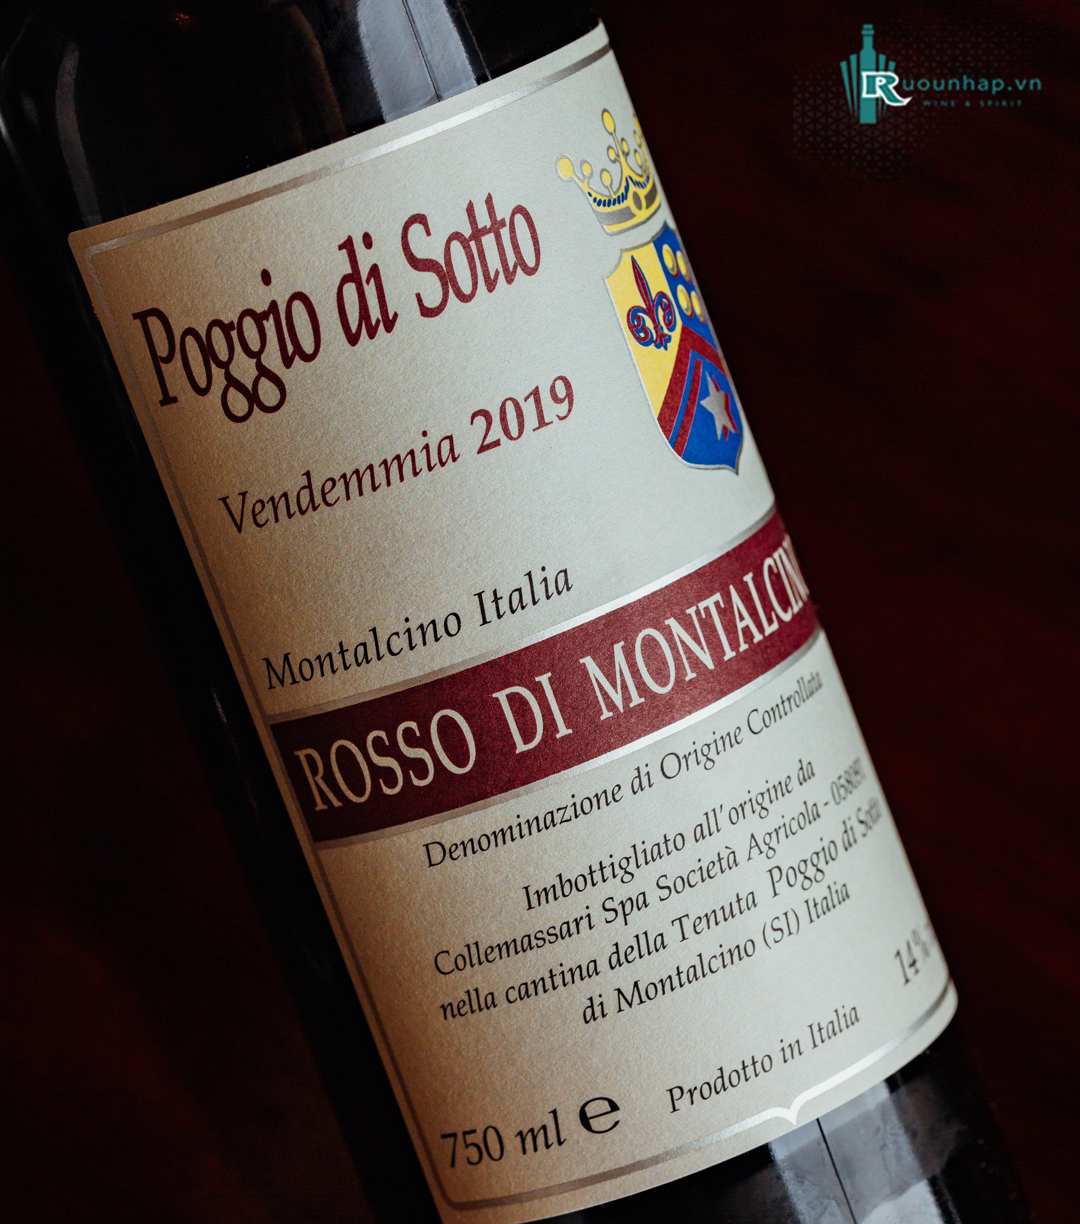 Rượu Vang Poggio Di Sotto Rosso Di Montalcino